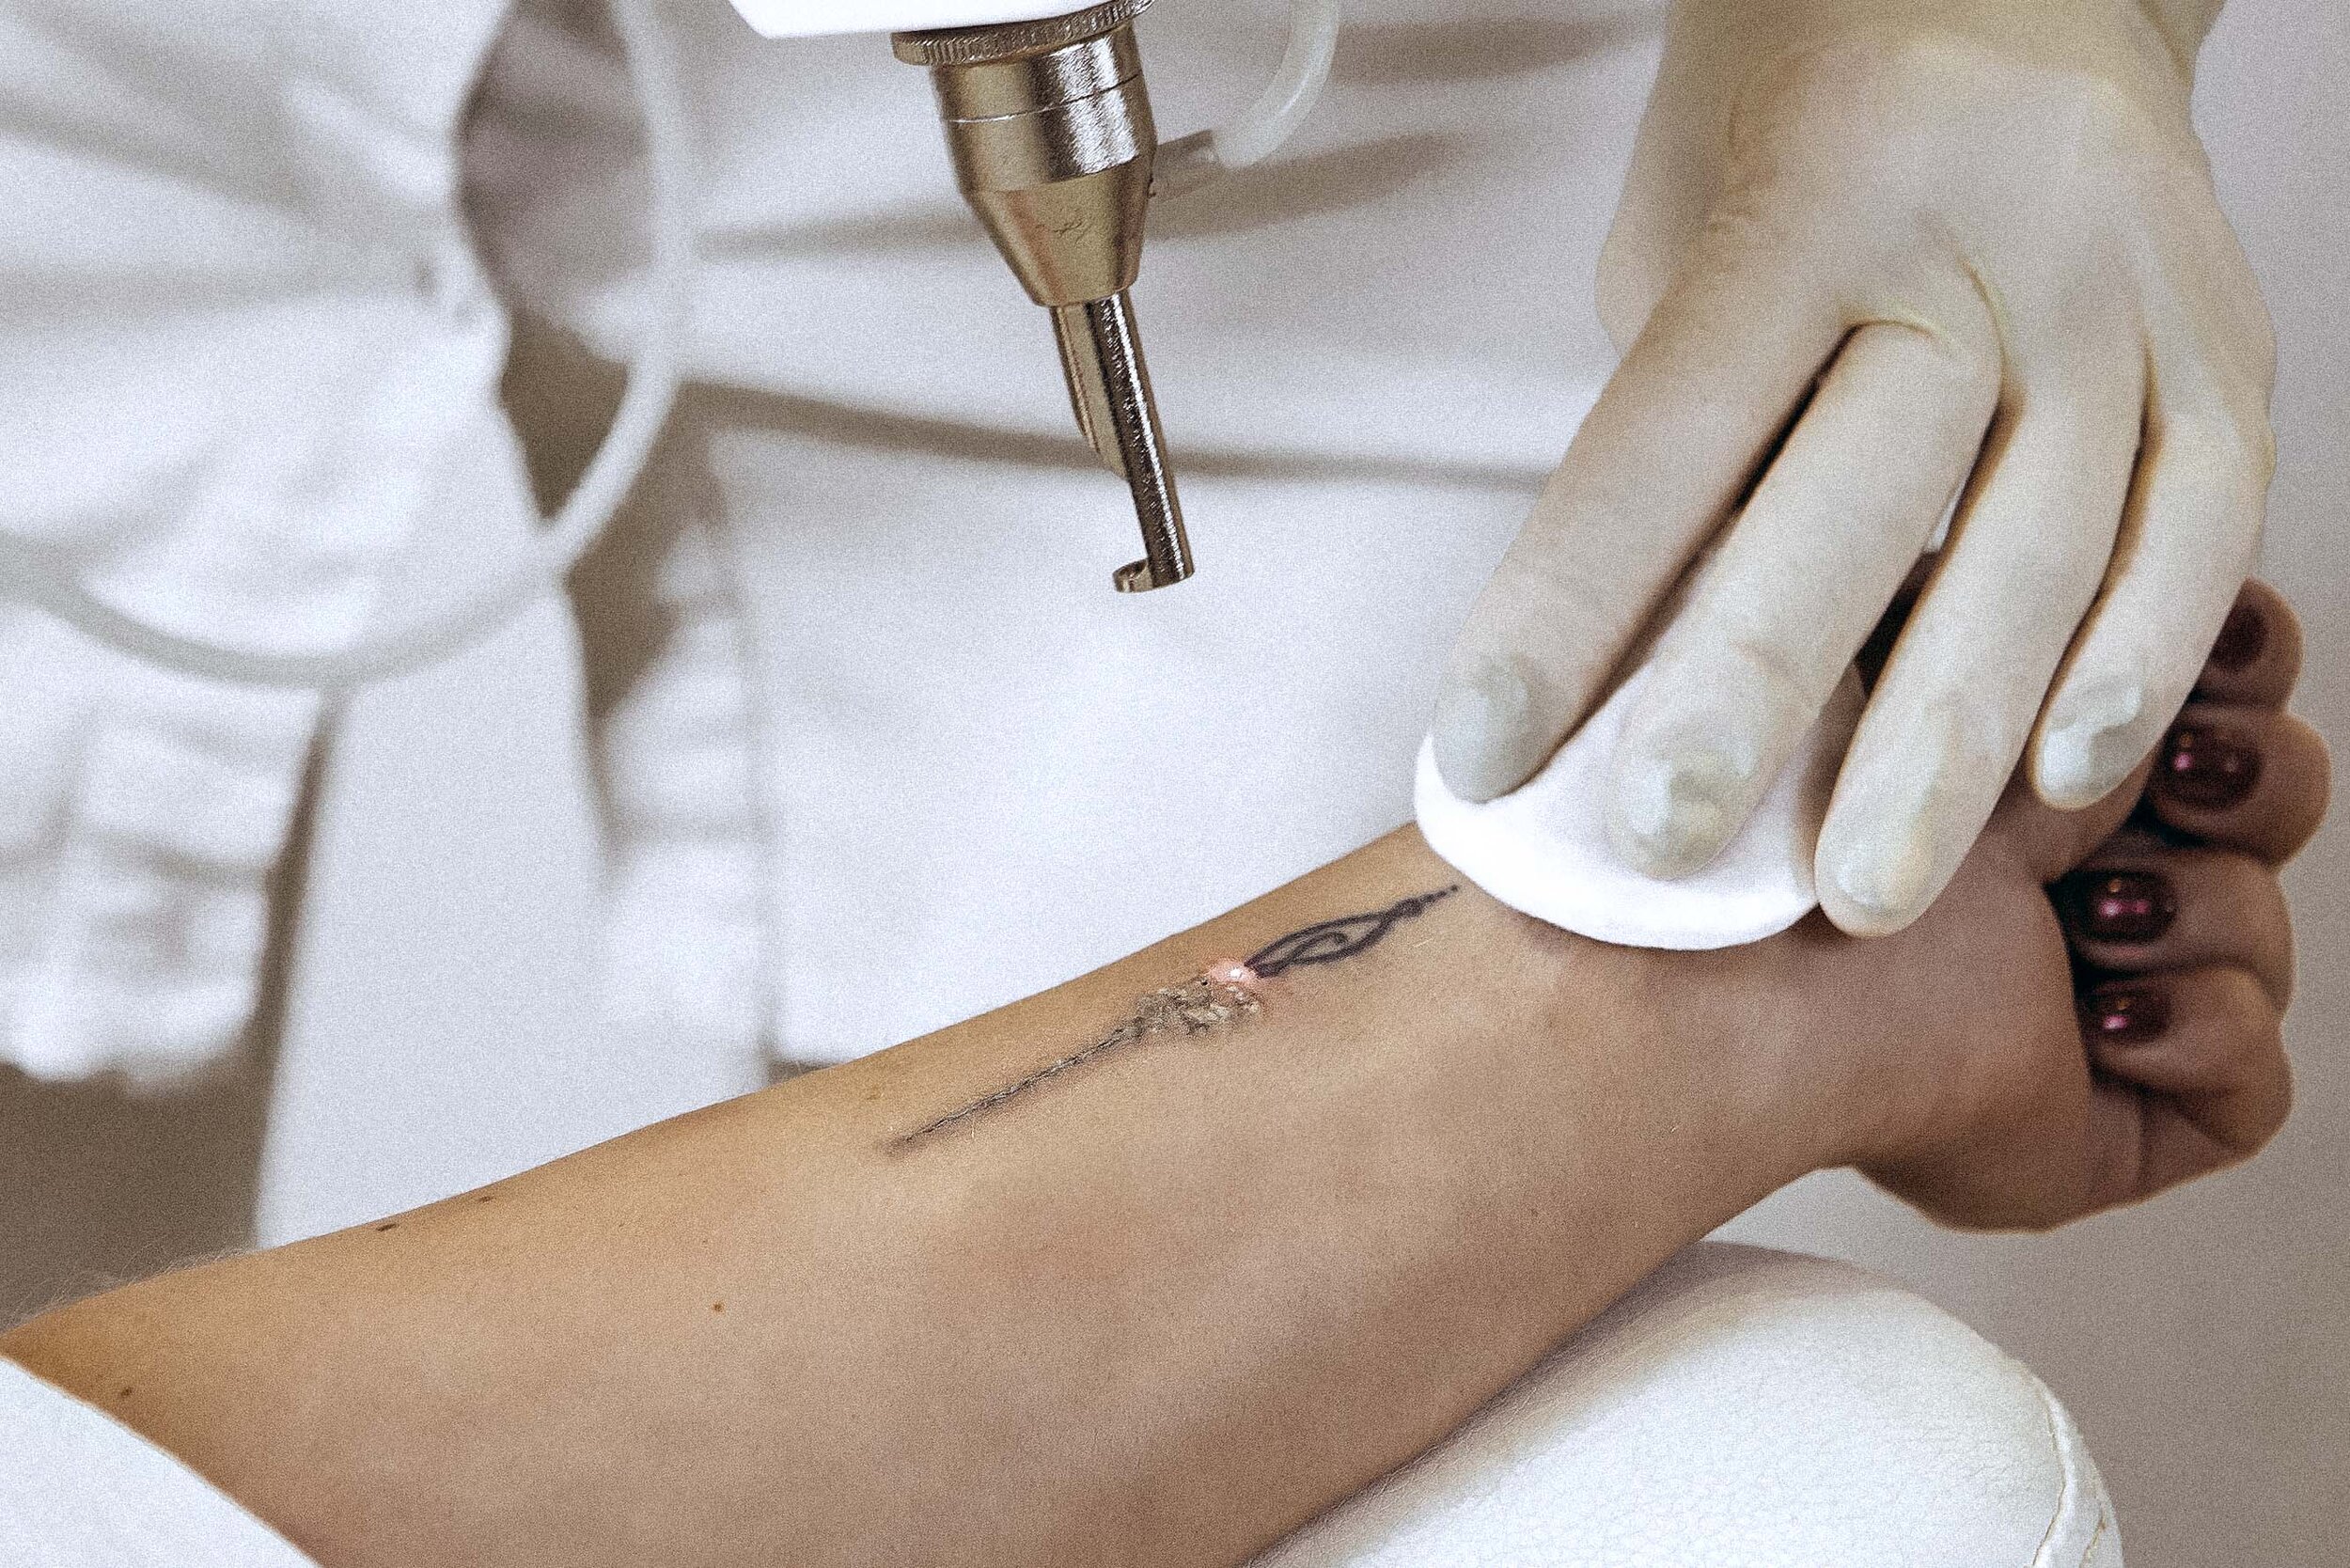 Tattoo-Entfernung mit Laser in Balingen 